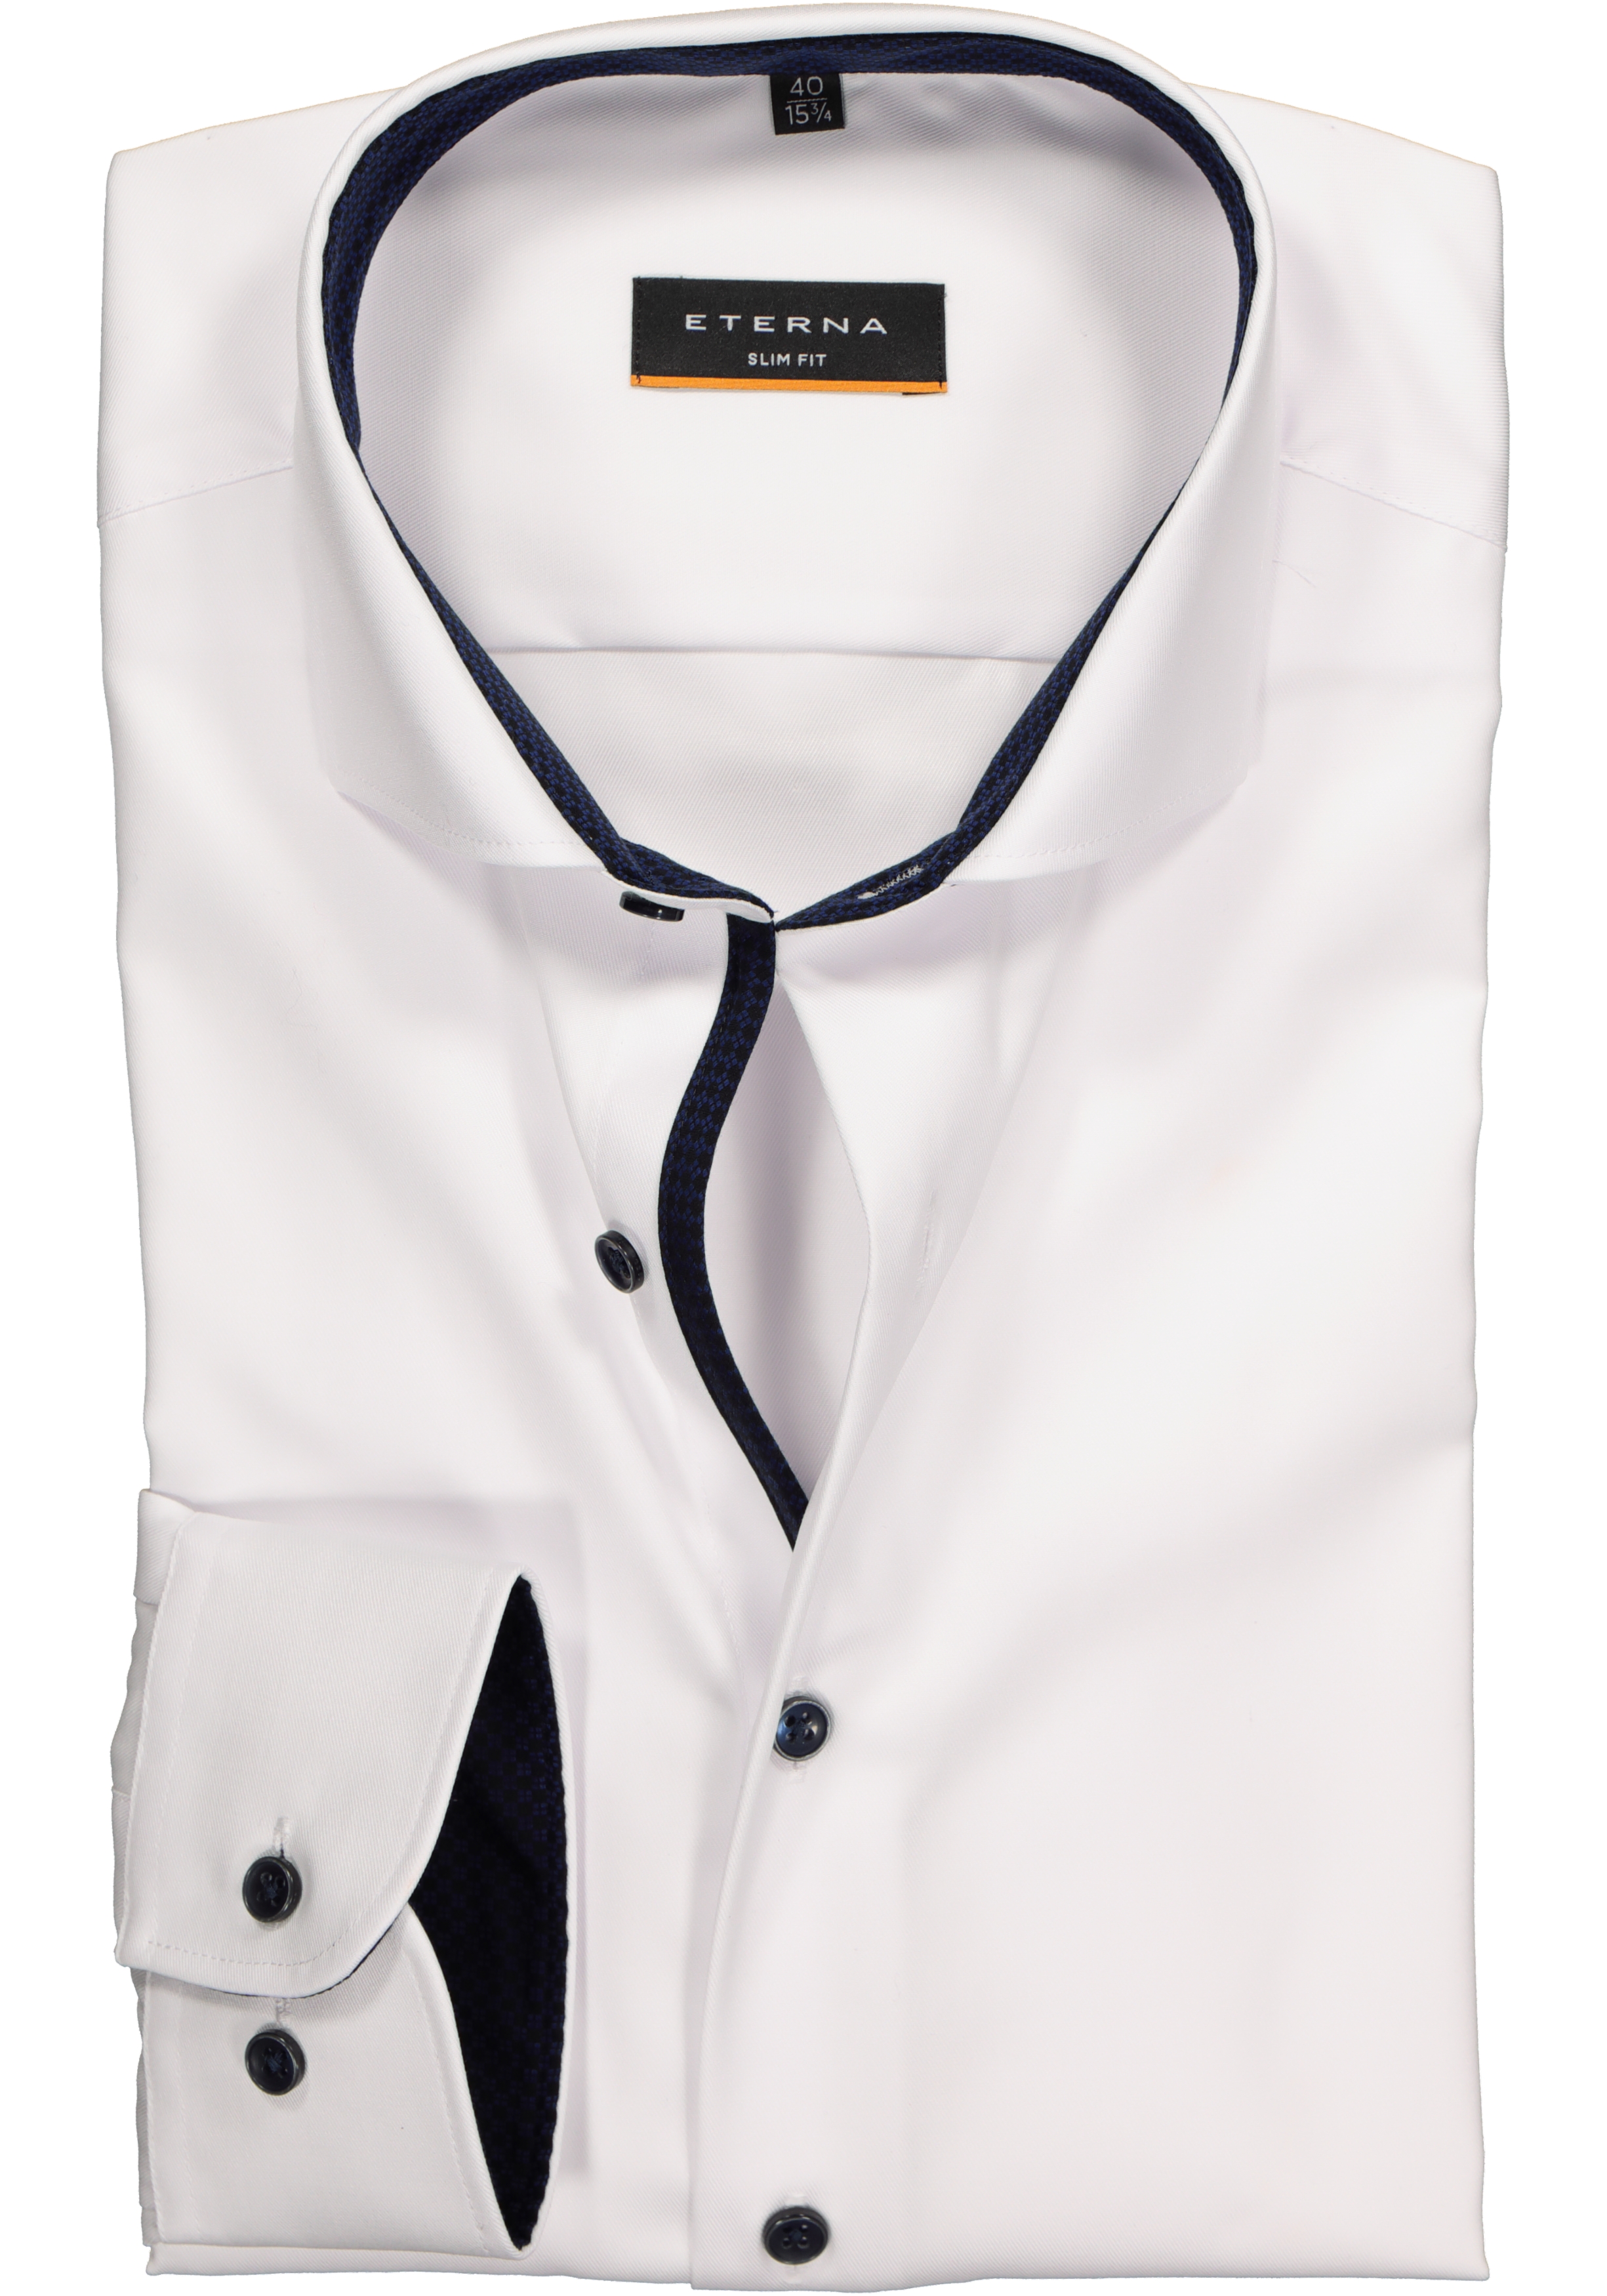 ETERNA slim fit overhemd, niet doorschijnend twill, wit (donkerblauw contrast)